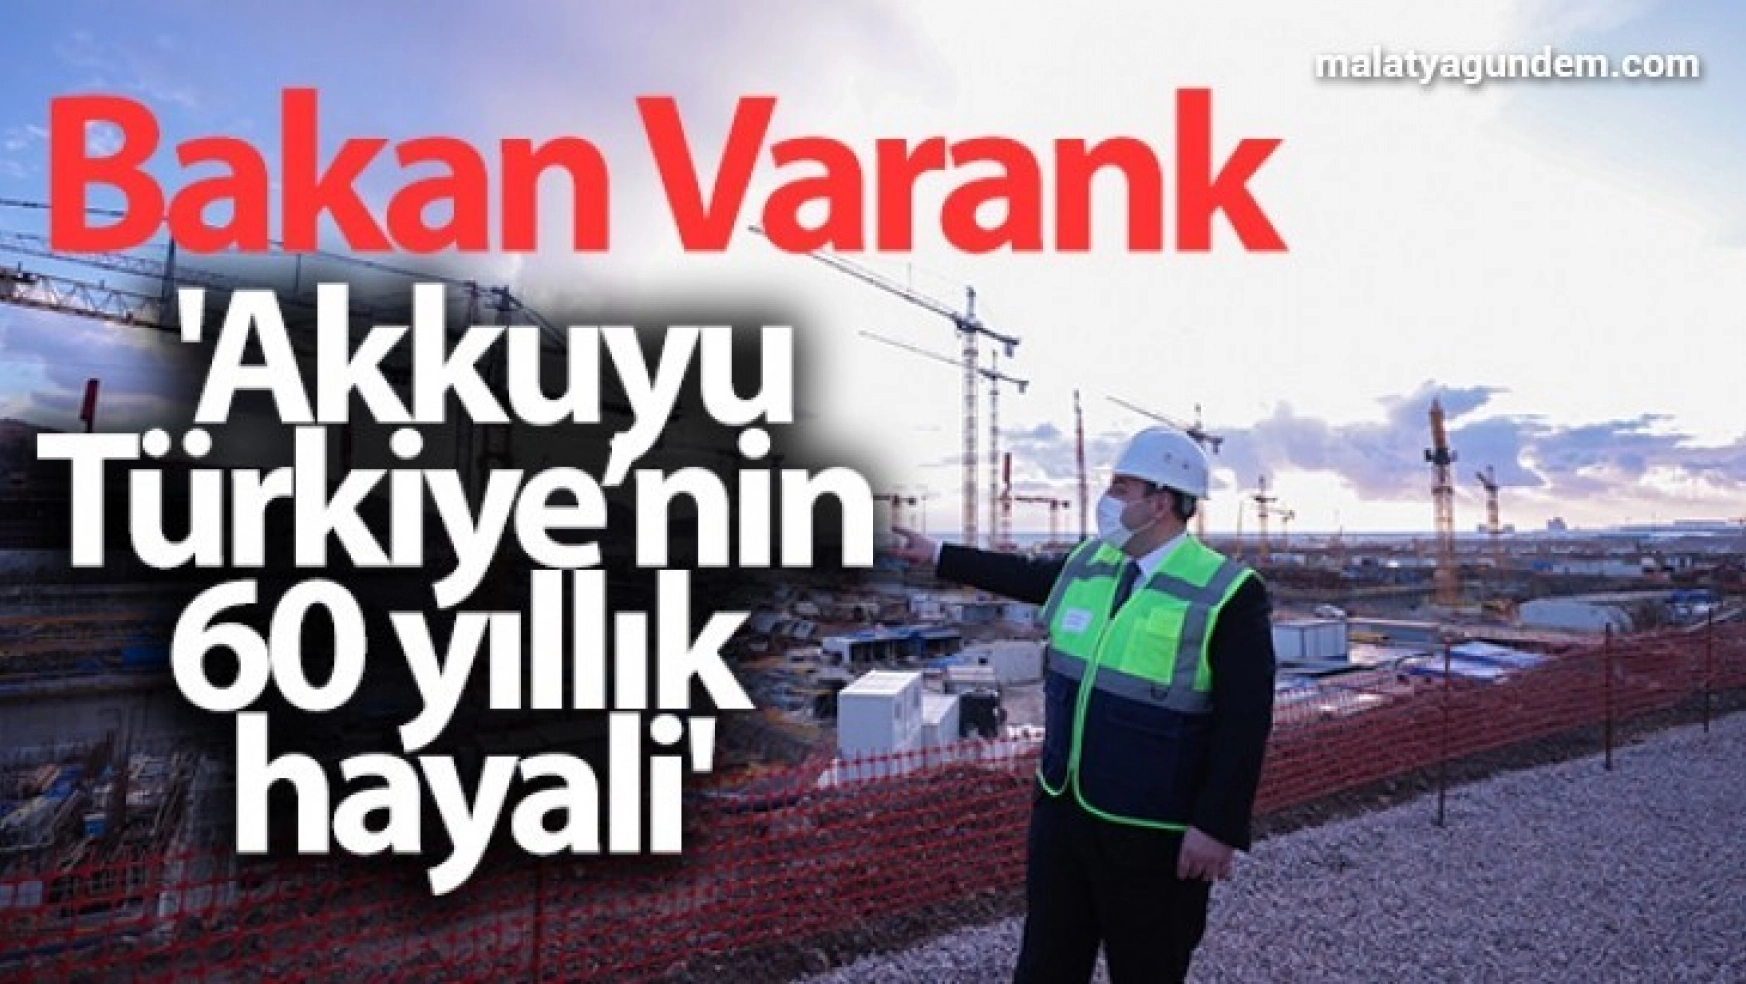 Bakan Varank: 'Akkuyu, Türkiye'nin 60 yıllık hayali'